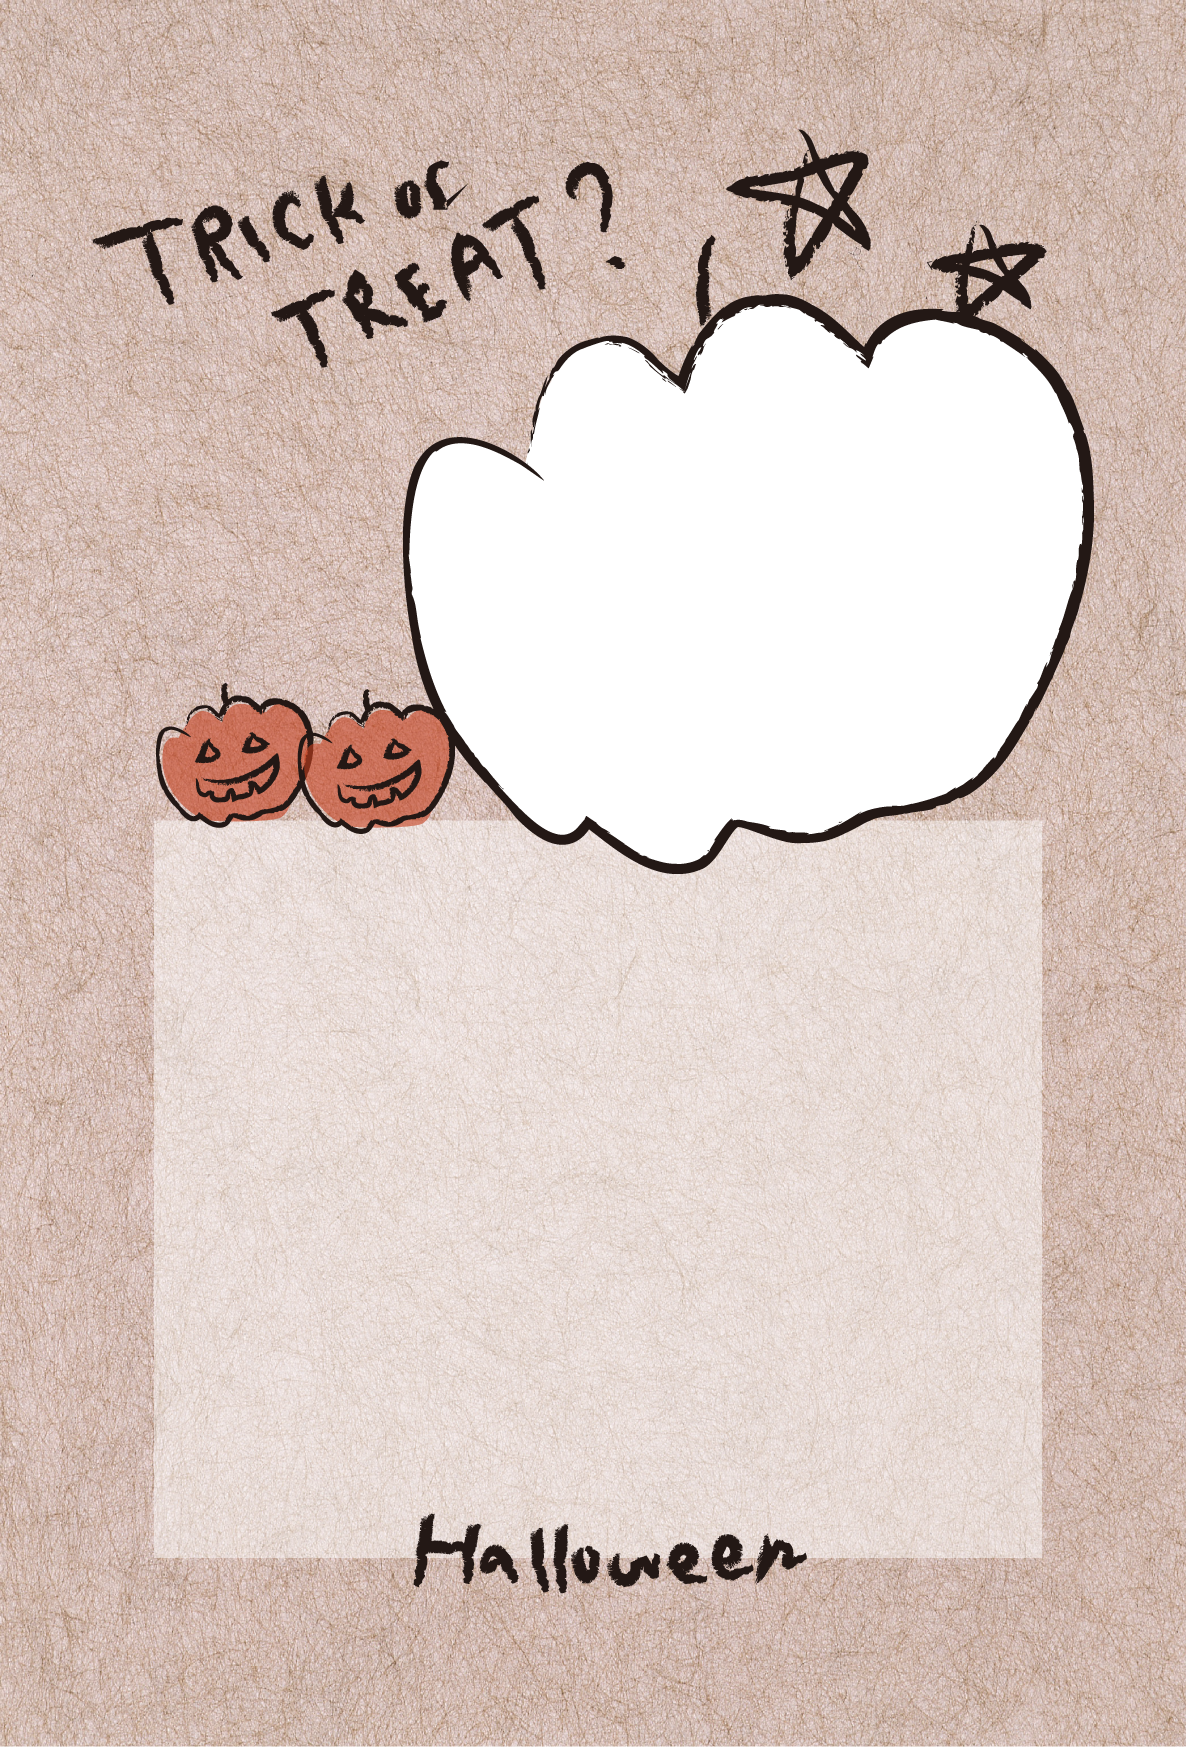 ハロウィン かぼちゃ 写真用 招待状 メッセージ用 無料テンプレート印刷 プリントミュージアム